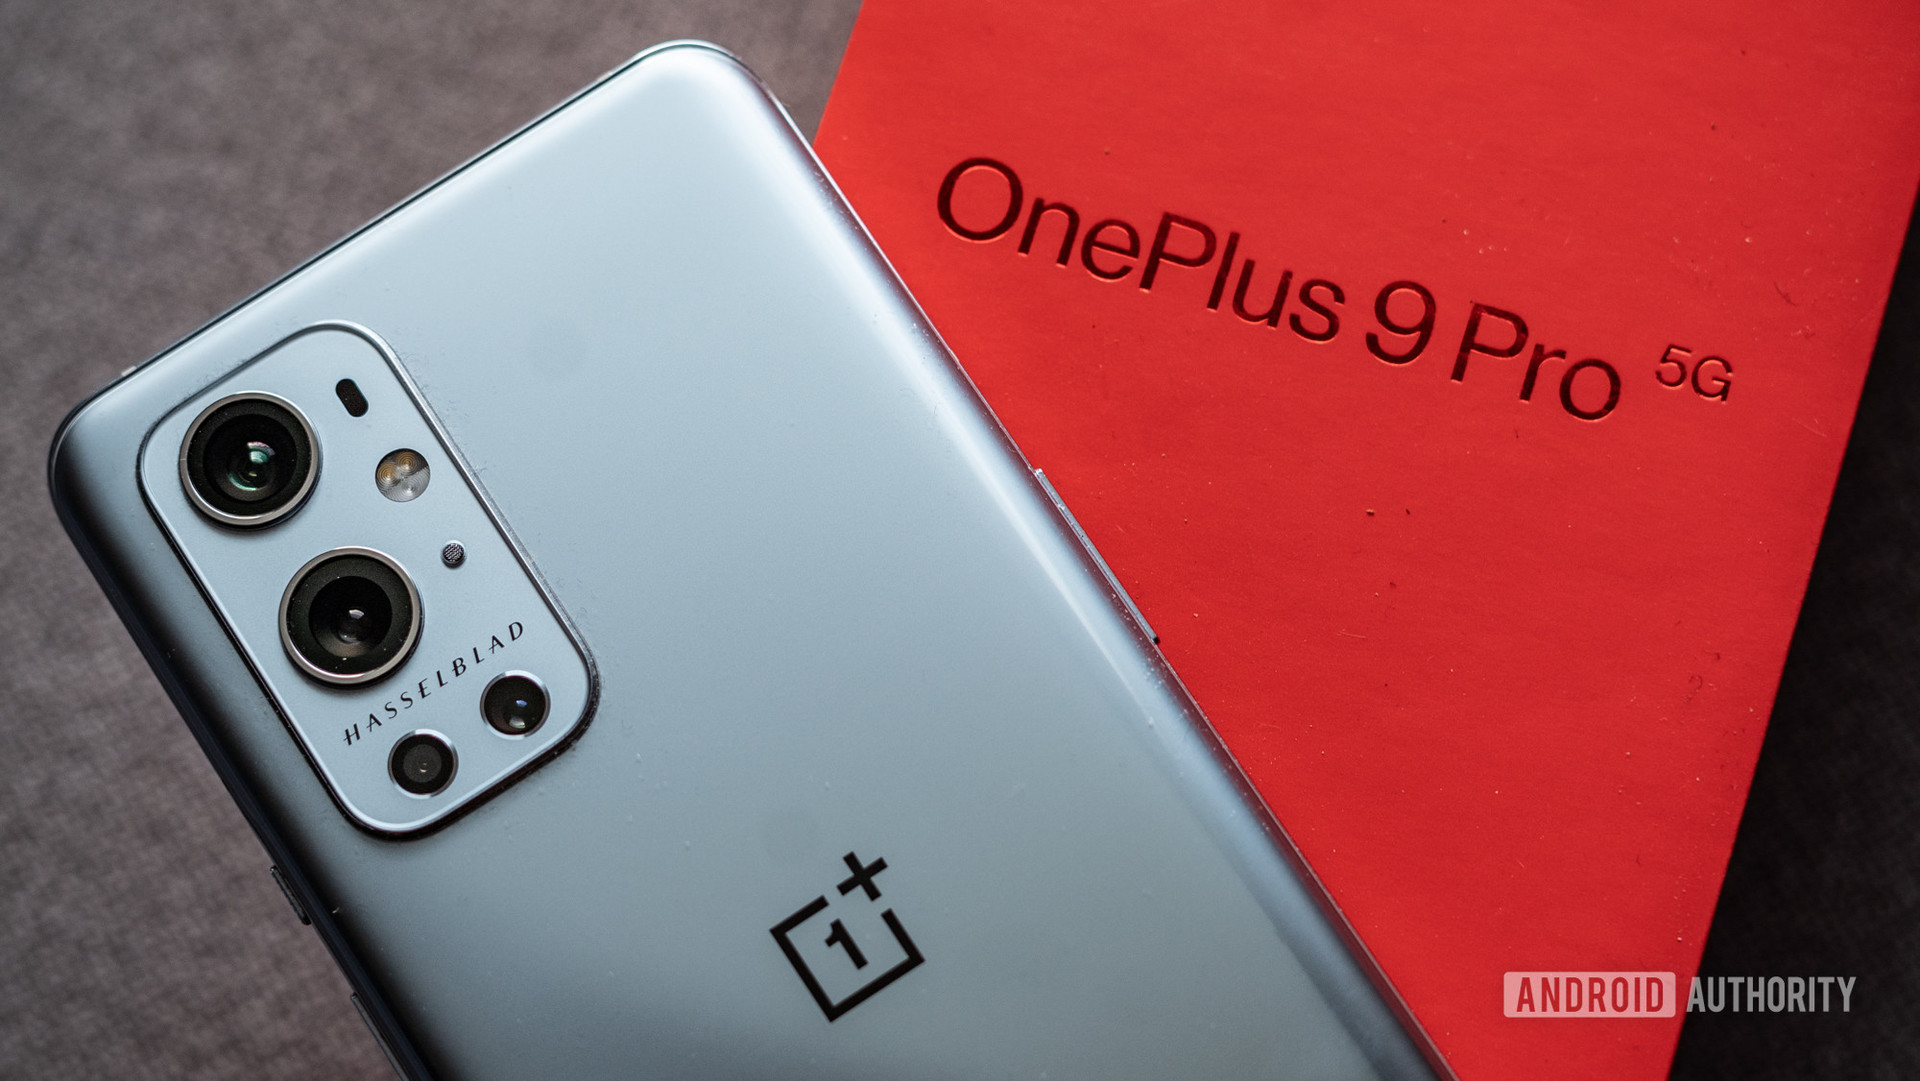  OnePlus 9 Pro نزدیک از hassleblad